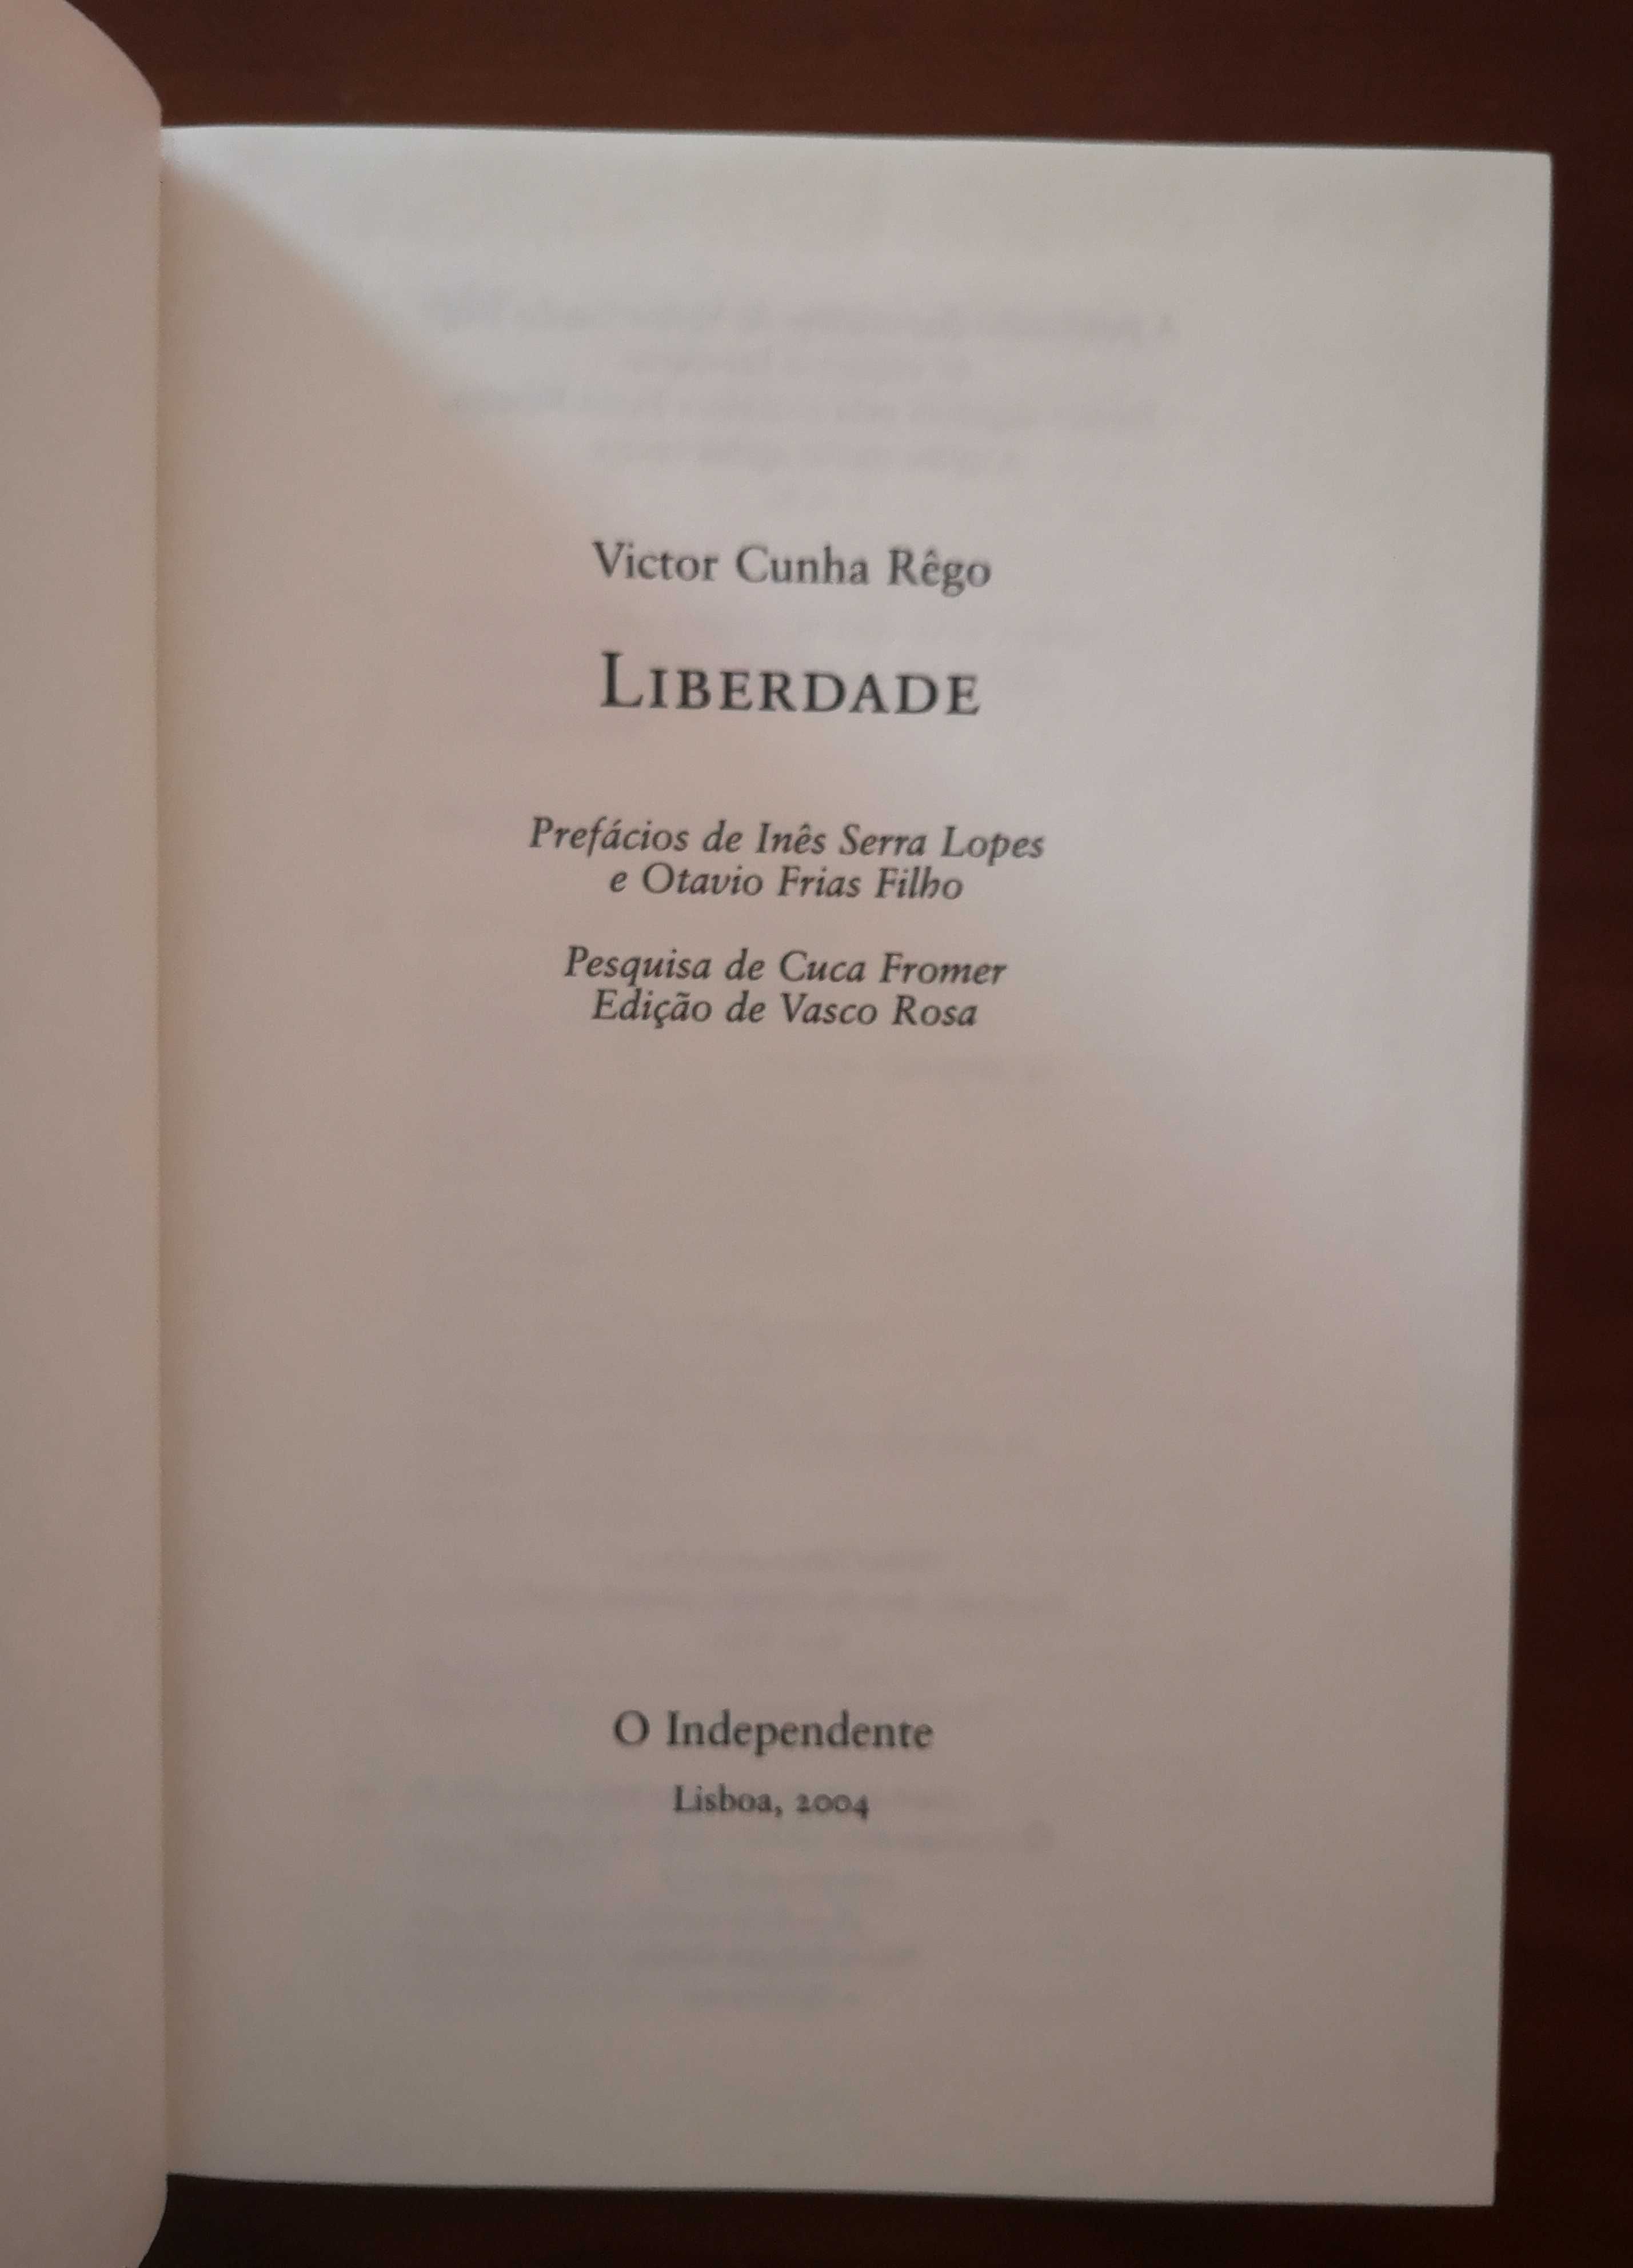 Livro "Liberdade, O Independente" de Victor Cunha Rêgo